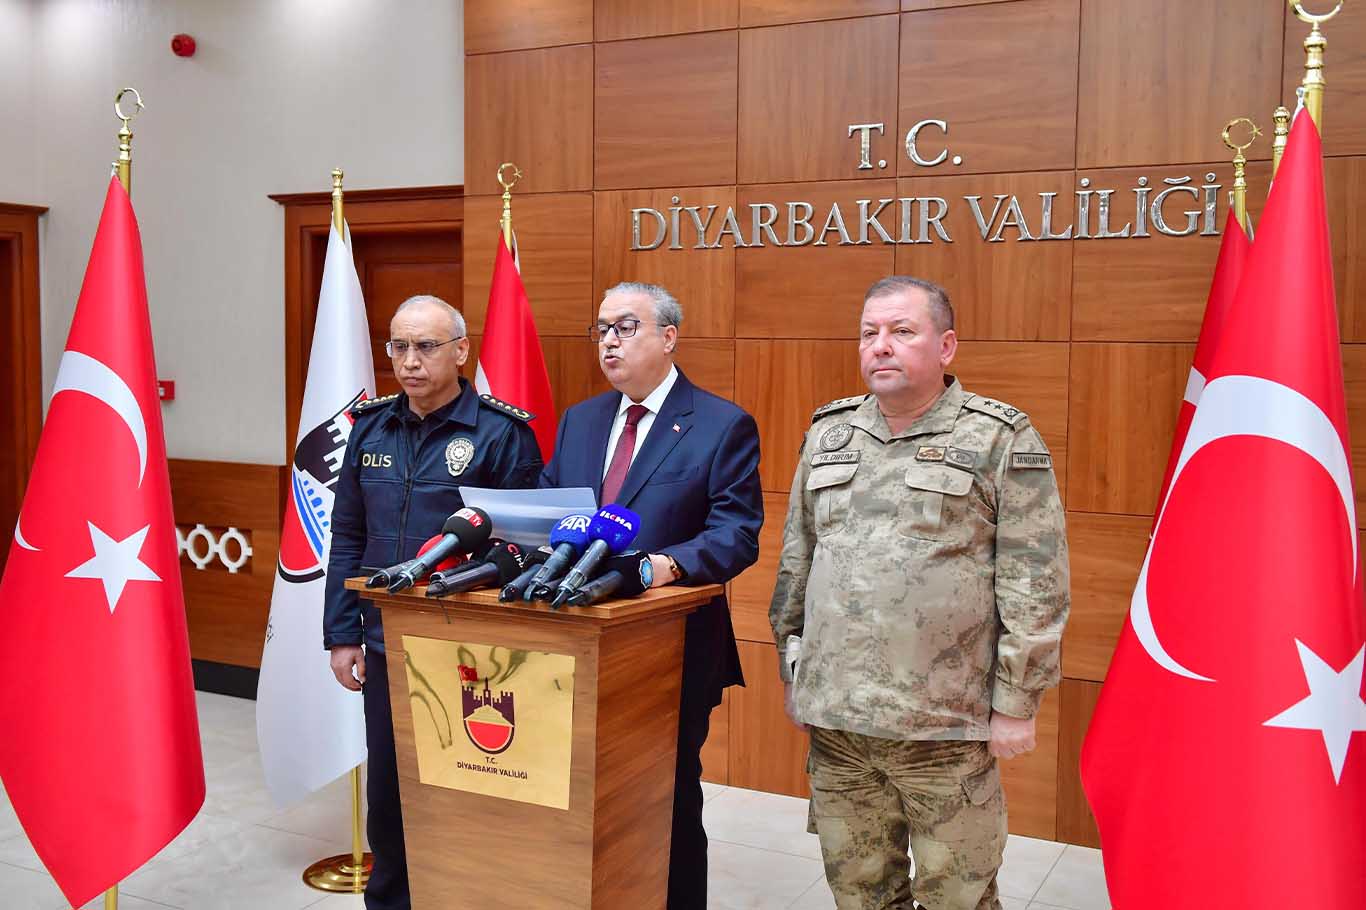 Diyarbakır’da 19 Saldırı Girişimi Engellendi 2